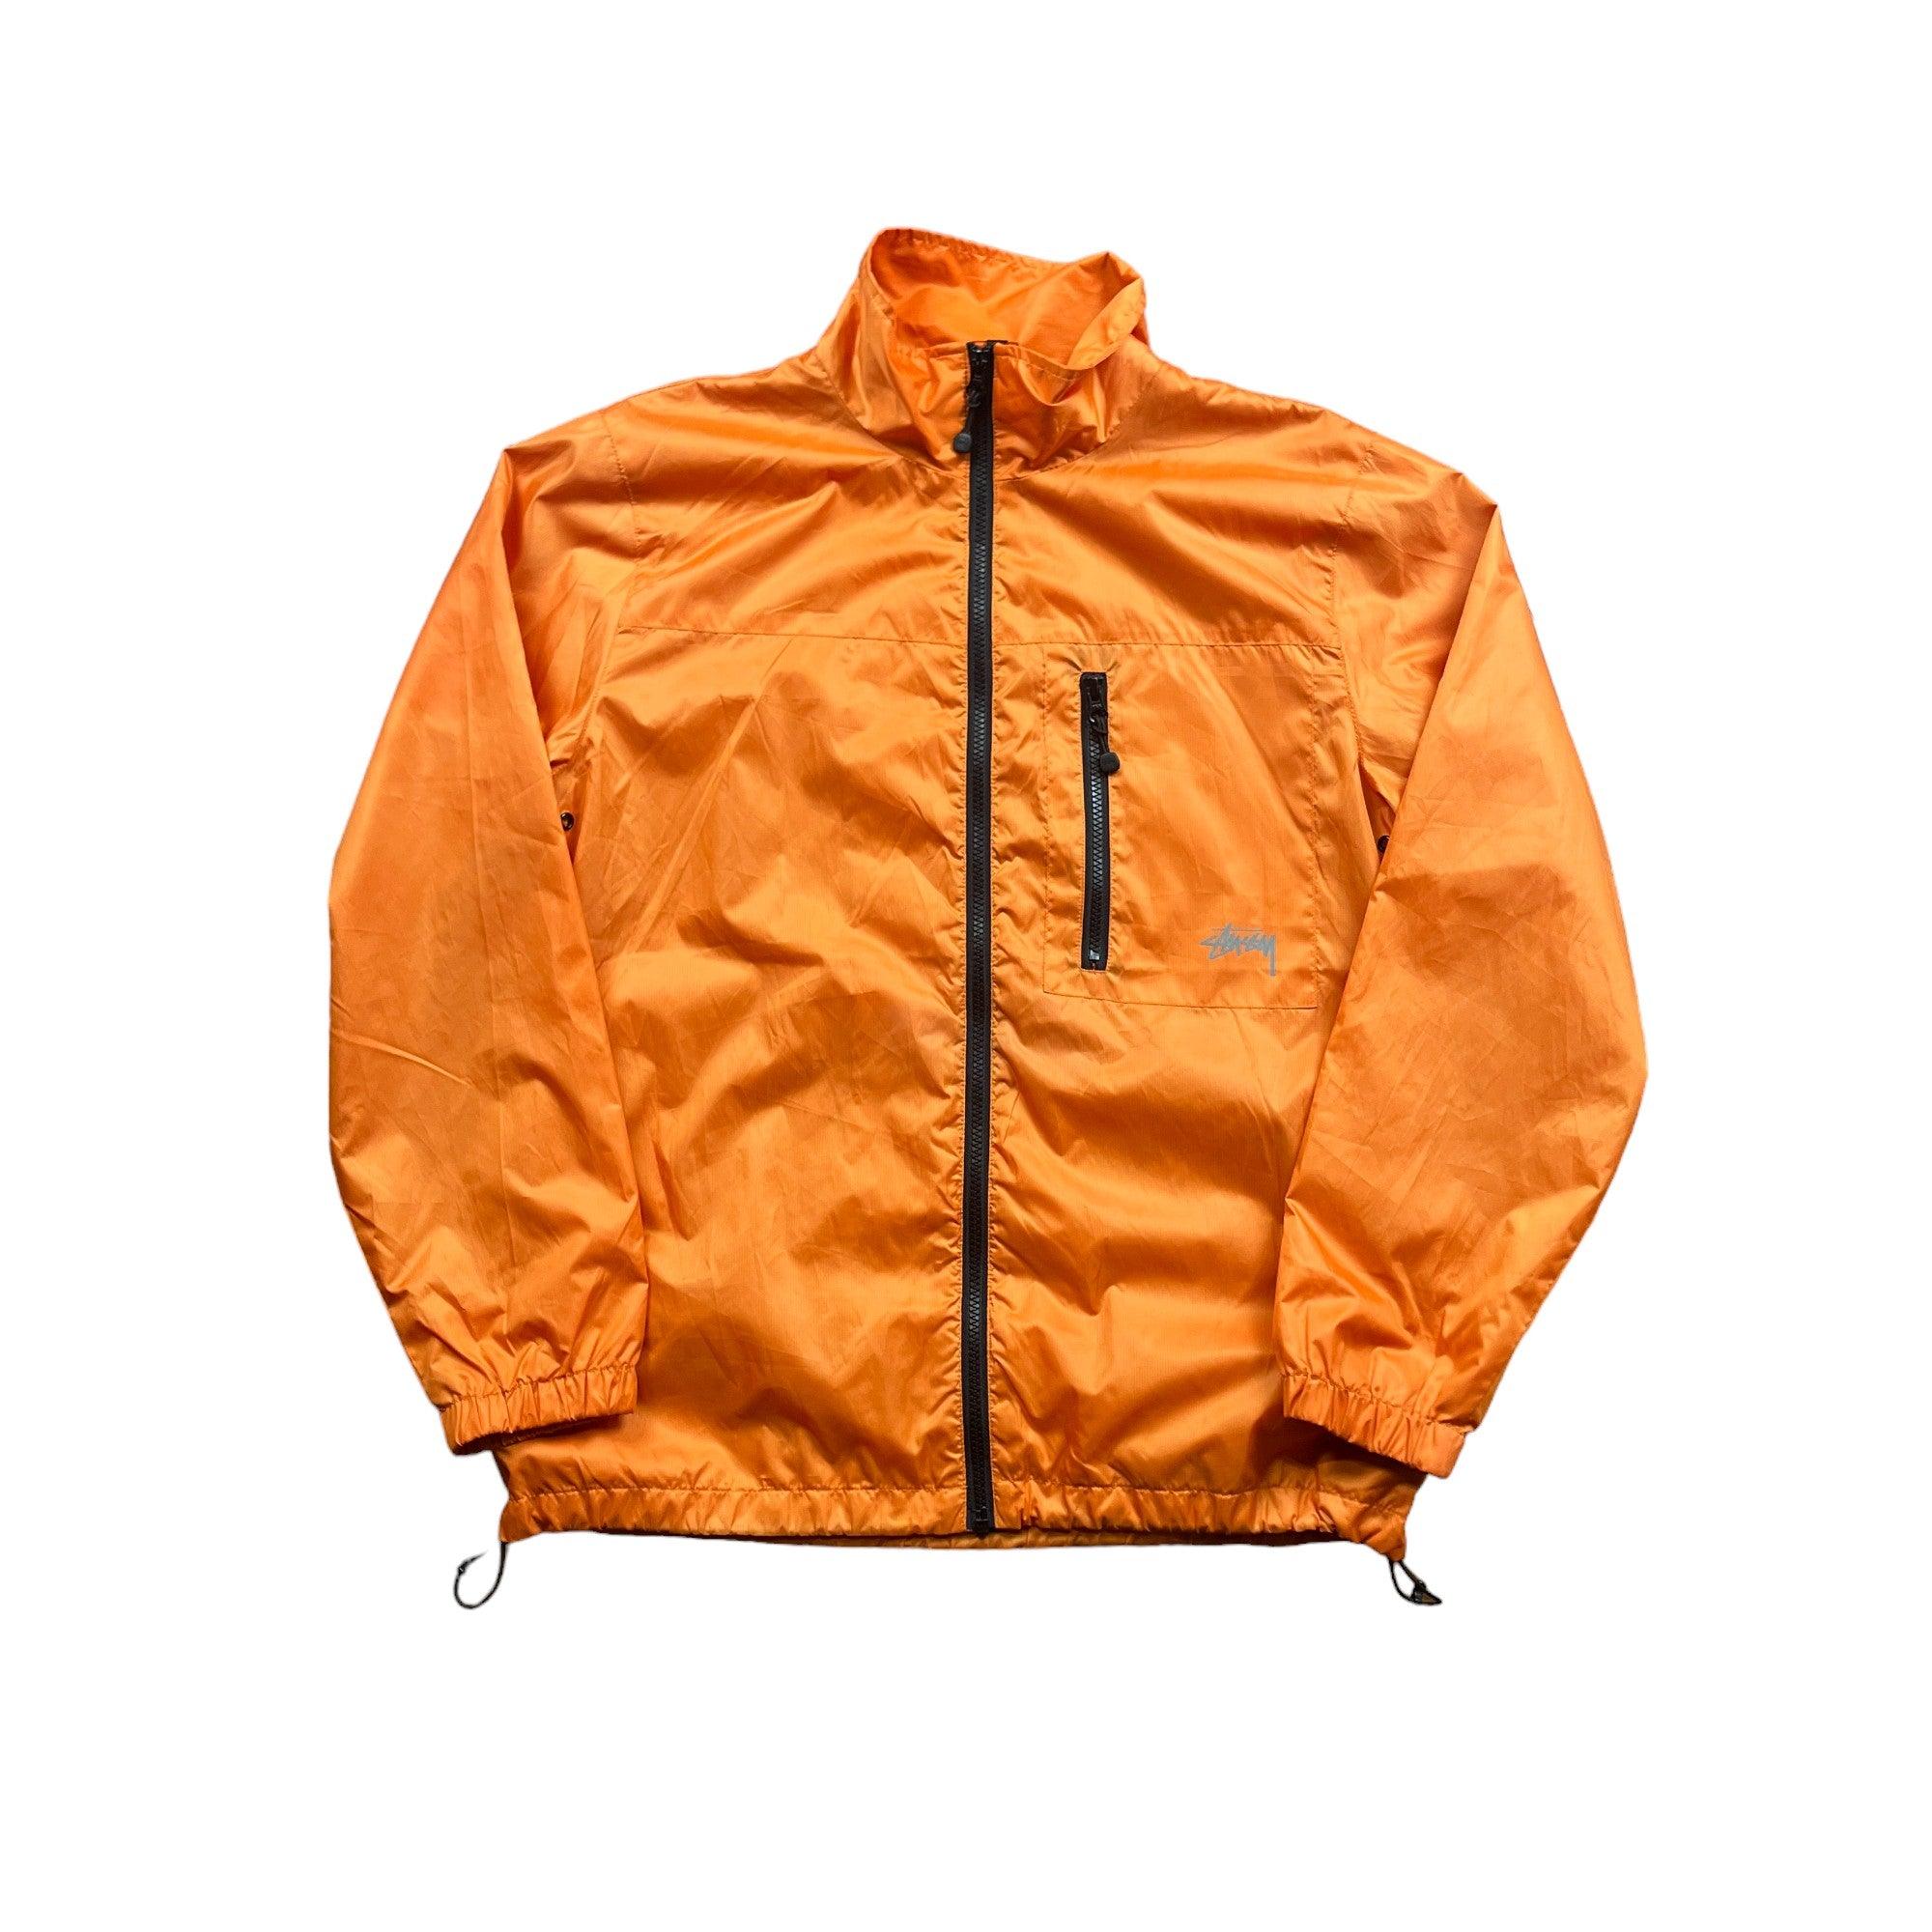 Orange Stussy Jacket - Medium - The Streetwear Studio